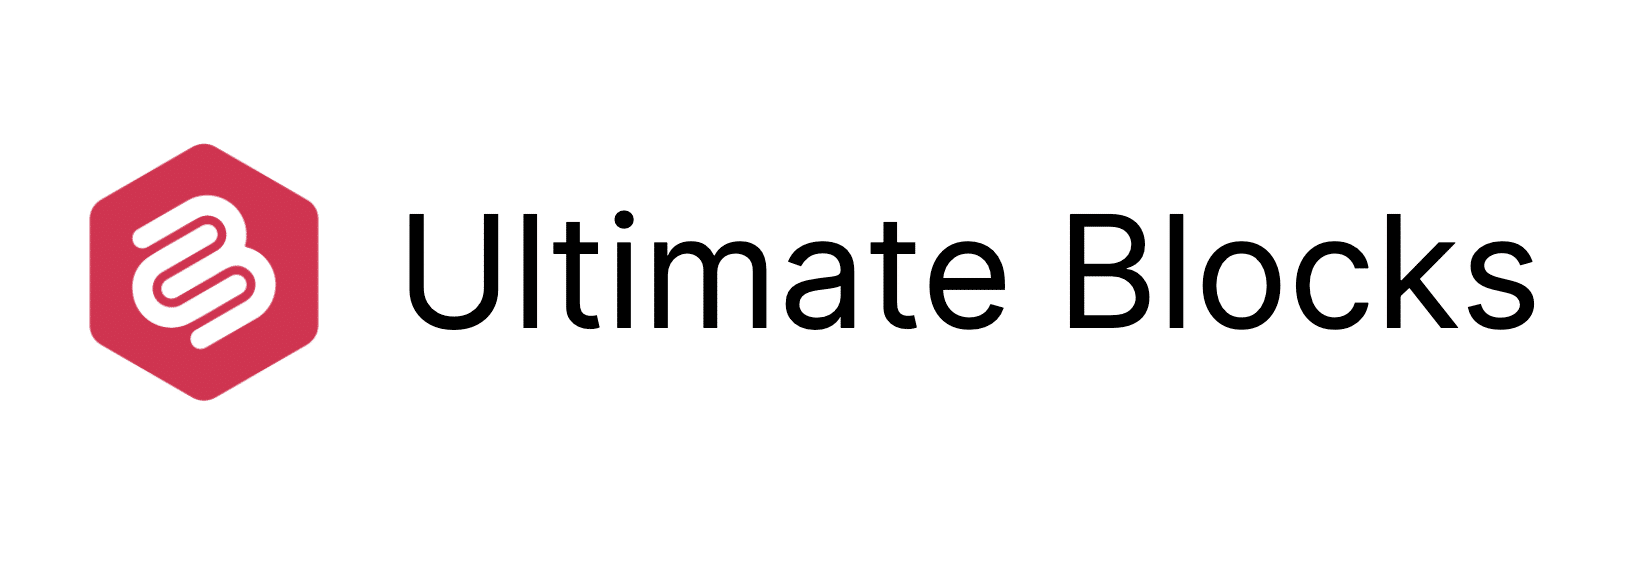 Ultimate Blocks plugin logo